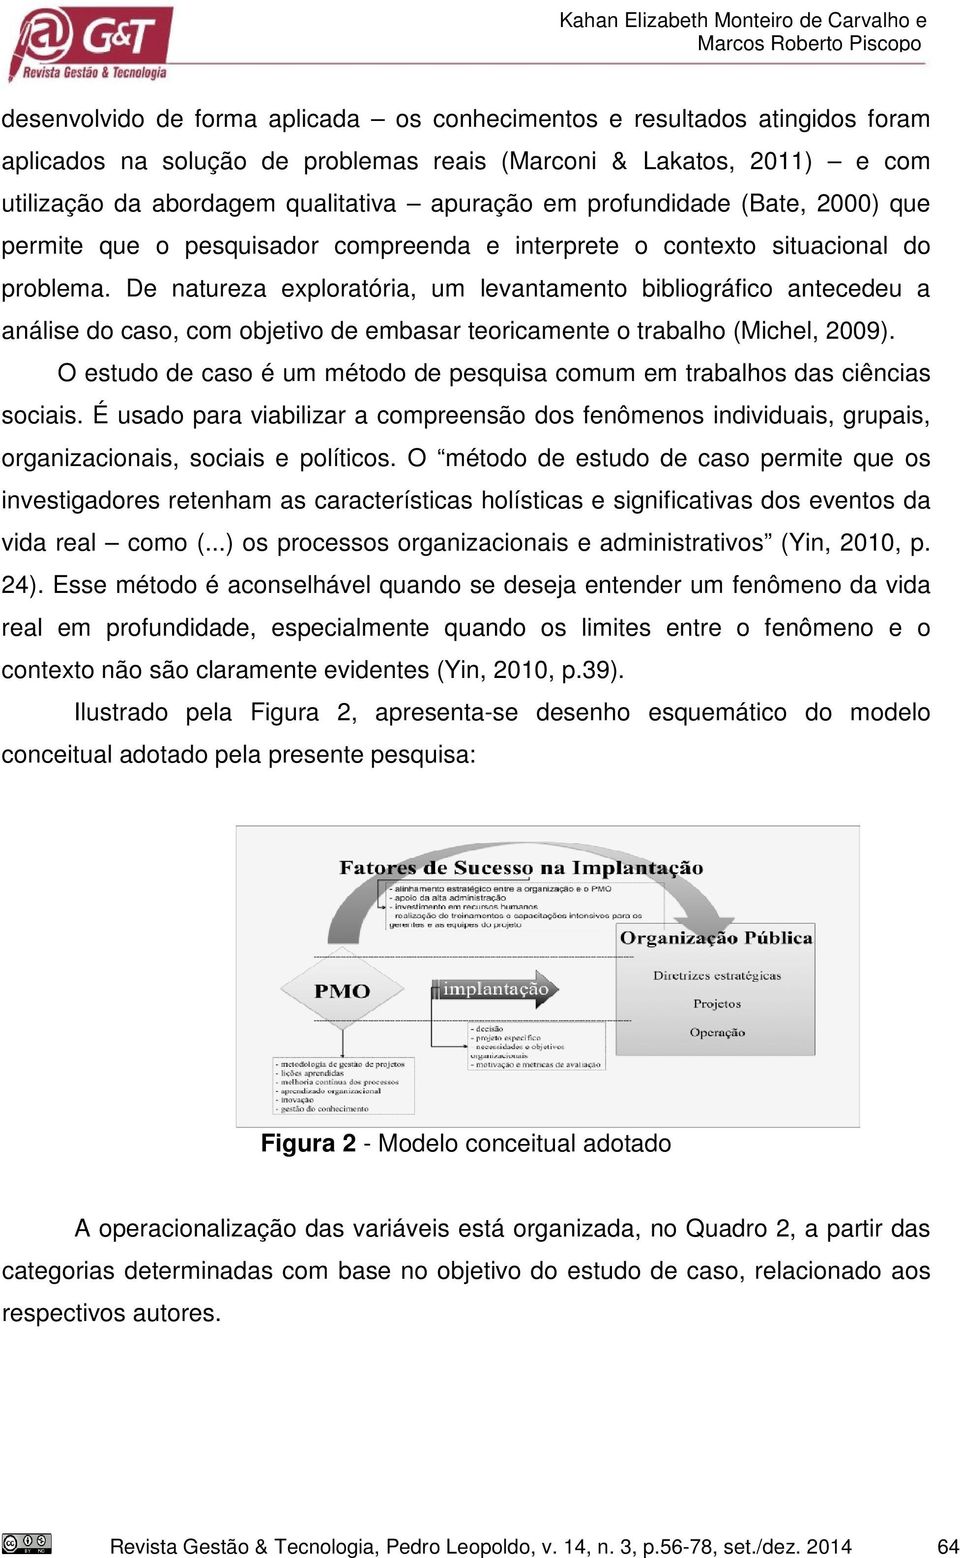 De natureza exploratória, um levantamento bibliográfico antecedeu a análise do caso, com objetivo de embasar teoricamente o trabalho (Michel, 2009).